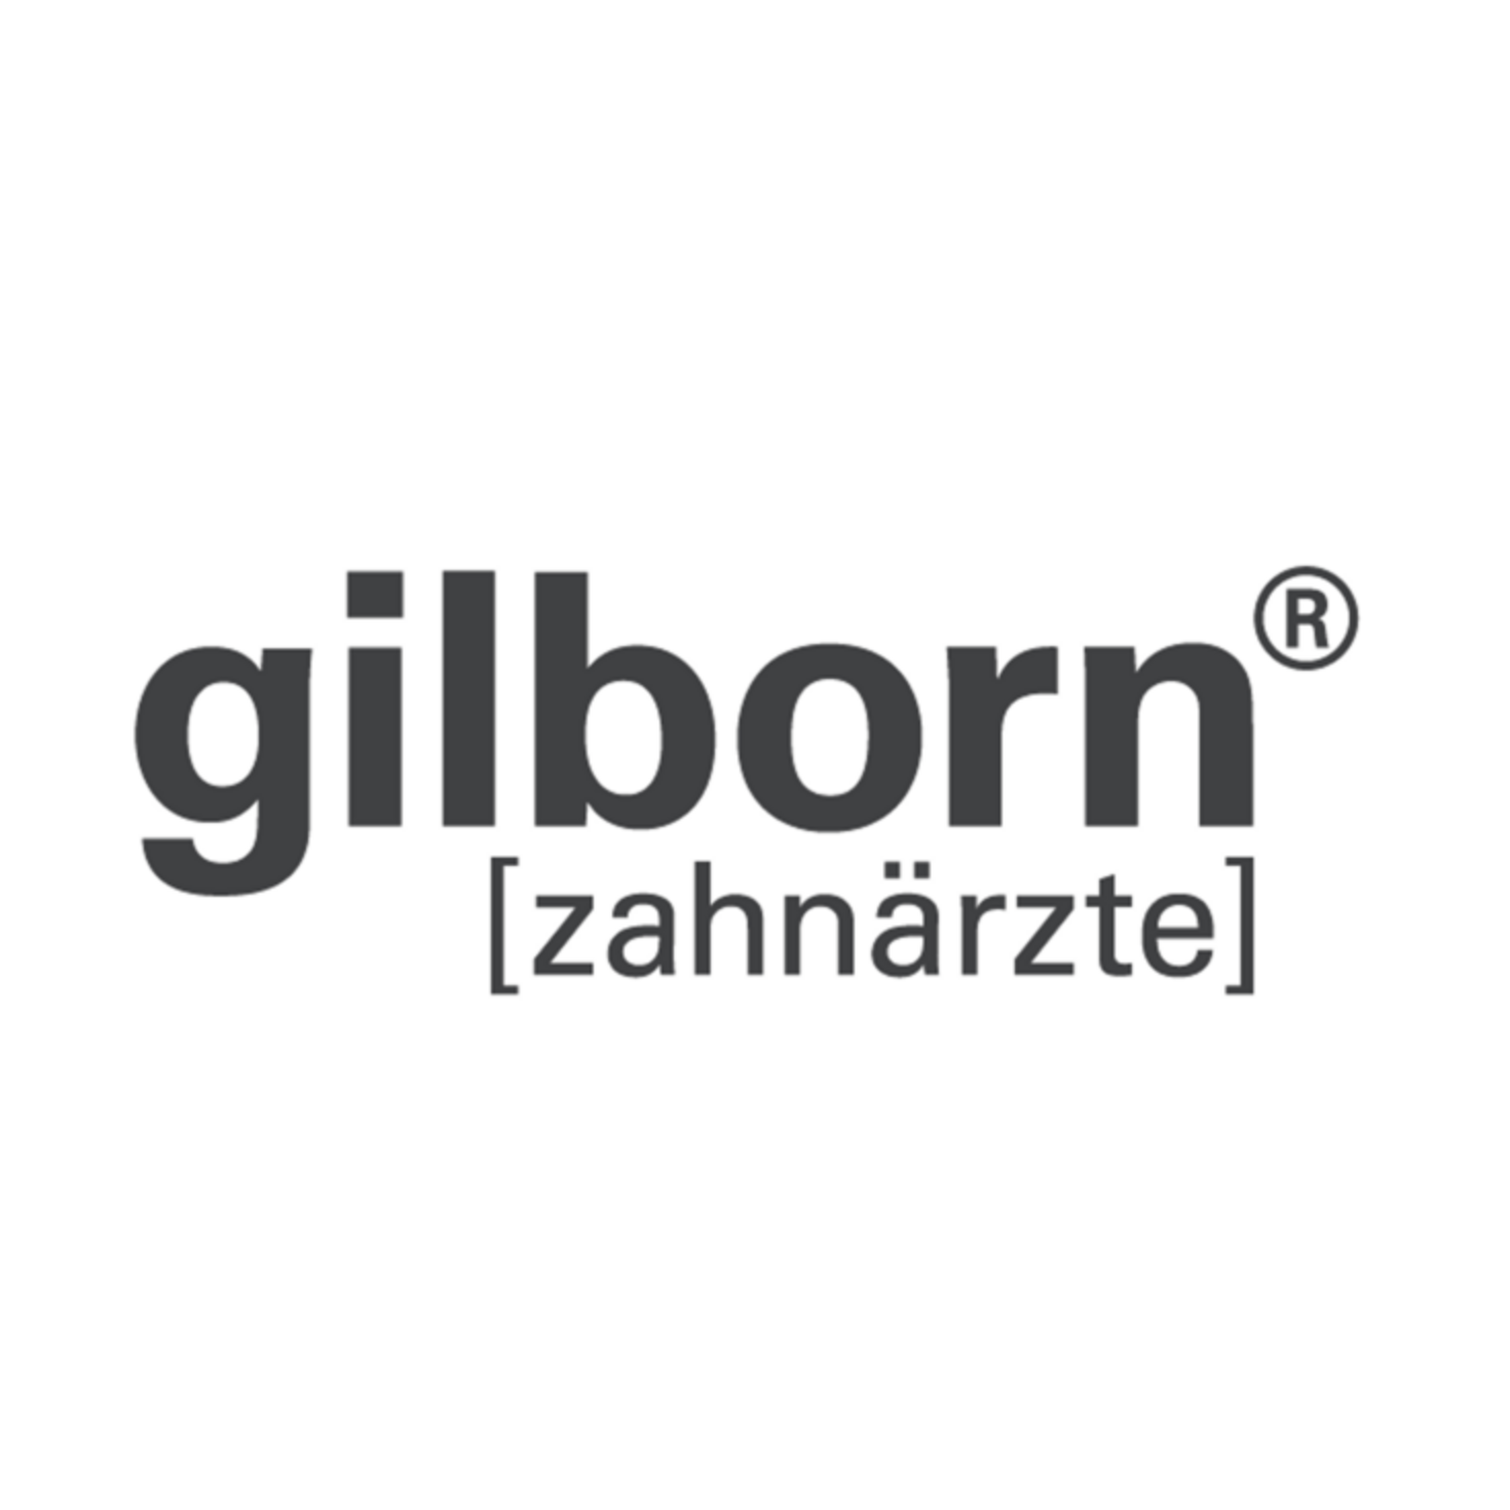 gilborn [zahnärzte] Dr. Jörg Schwitalla, ZA Jens Westermann, ZA Andreas Nußbicker Logo